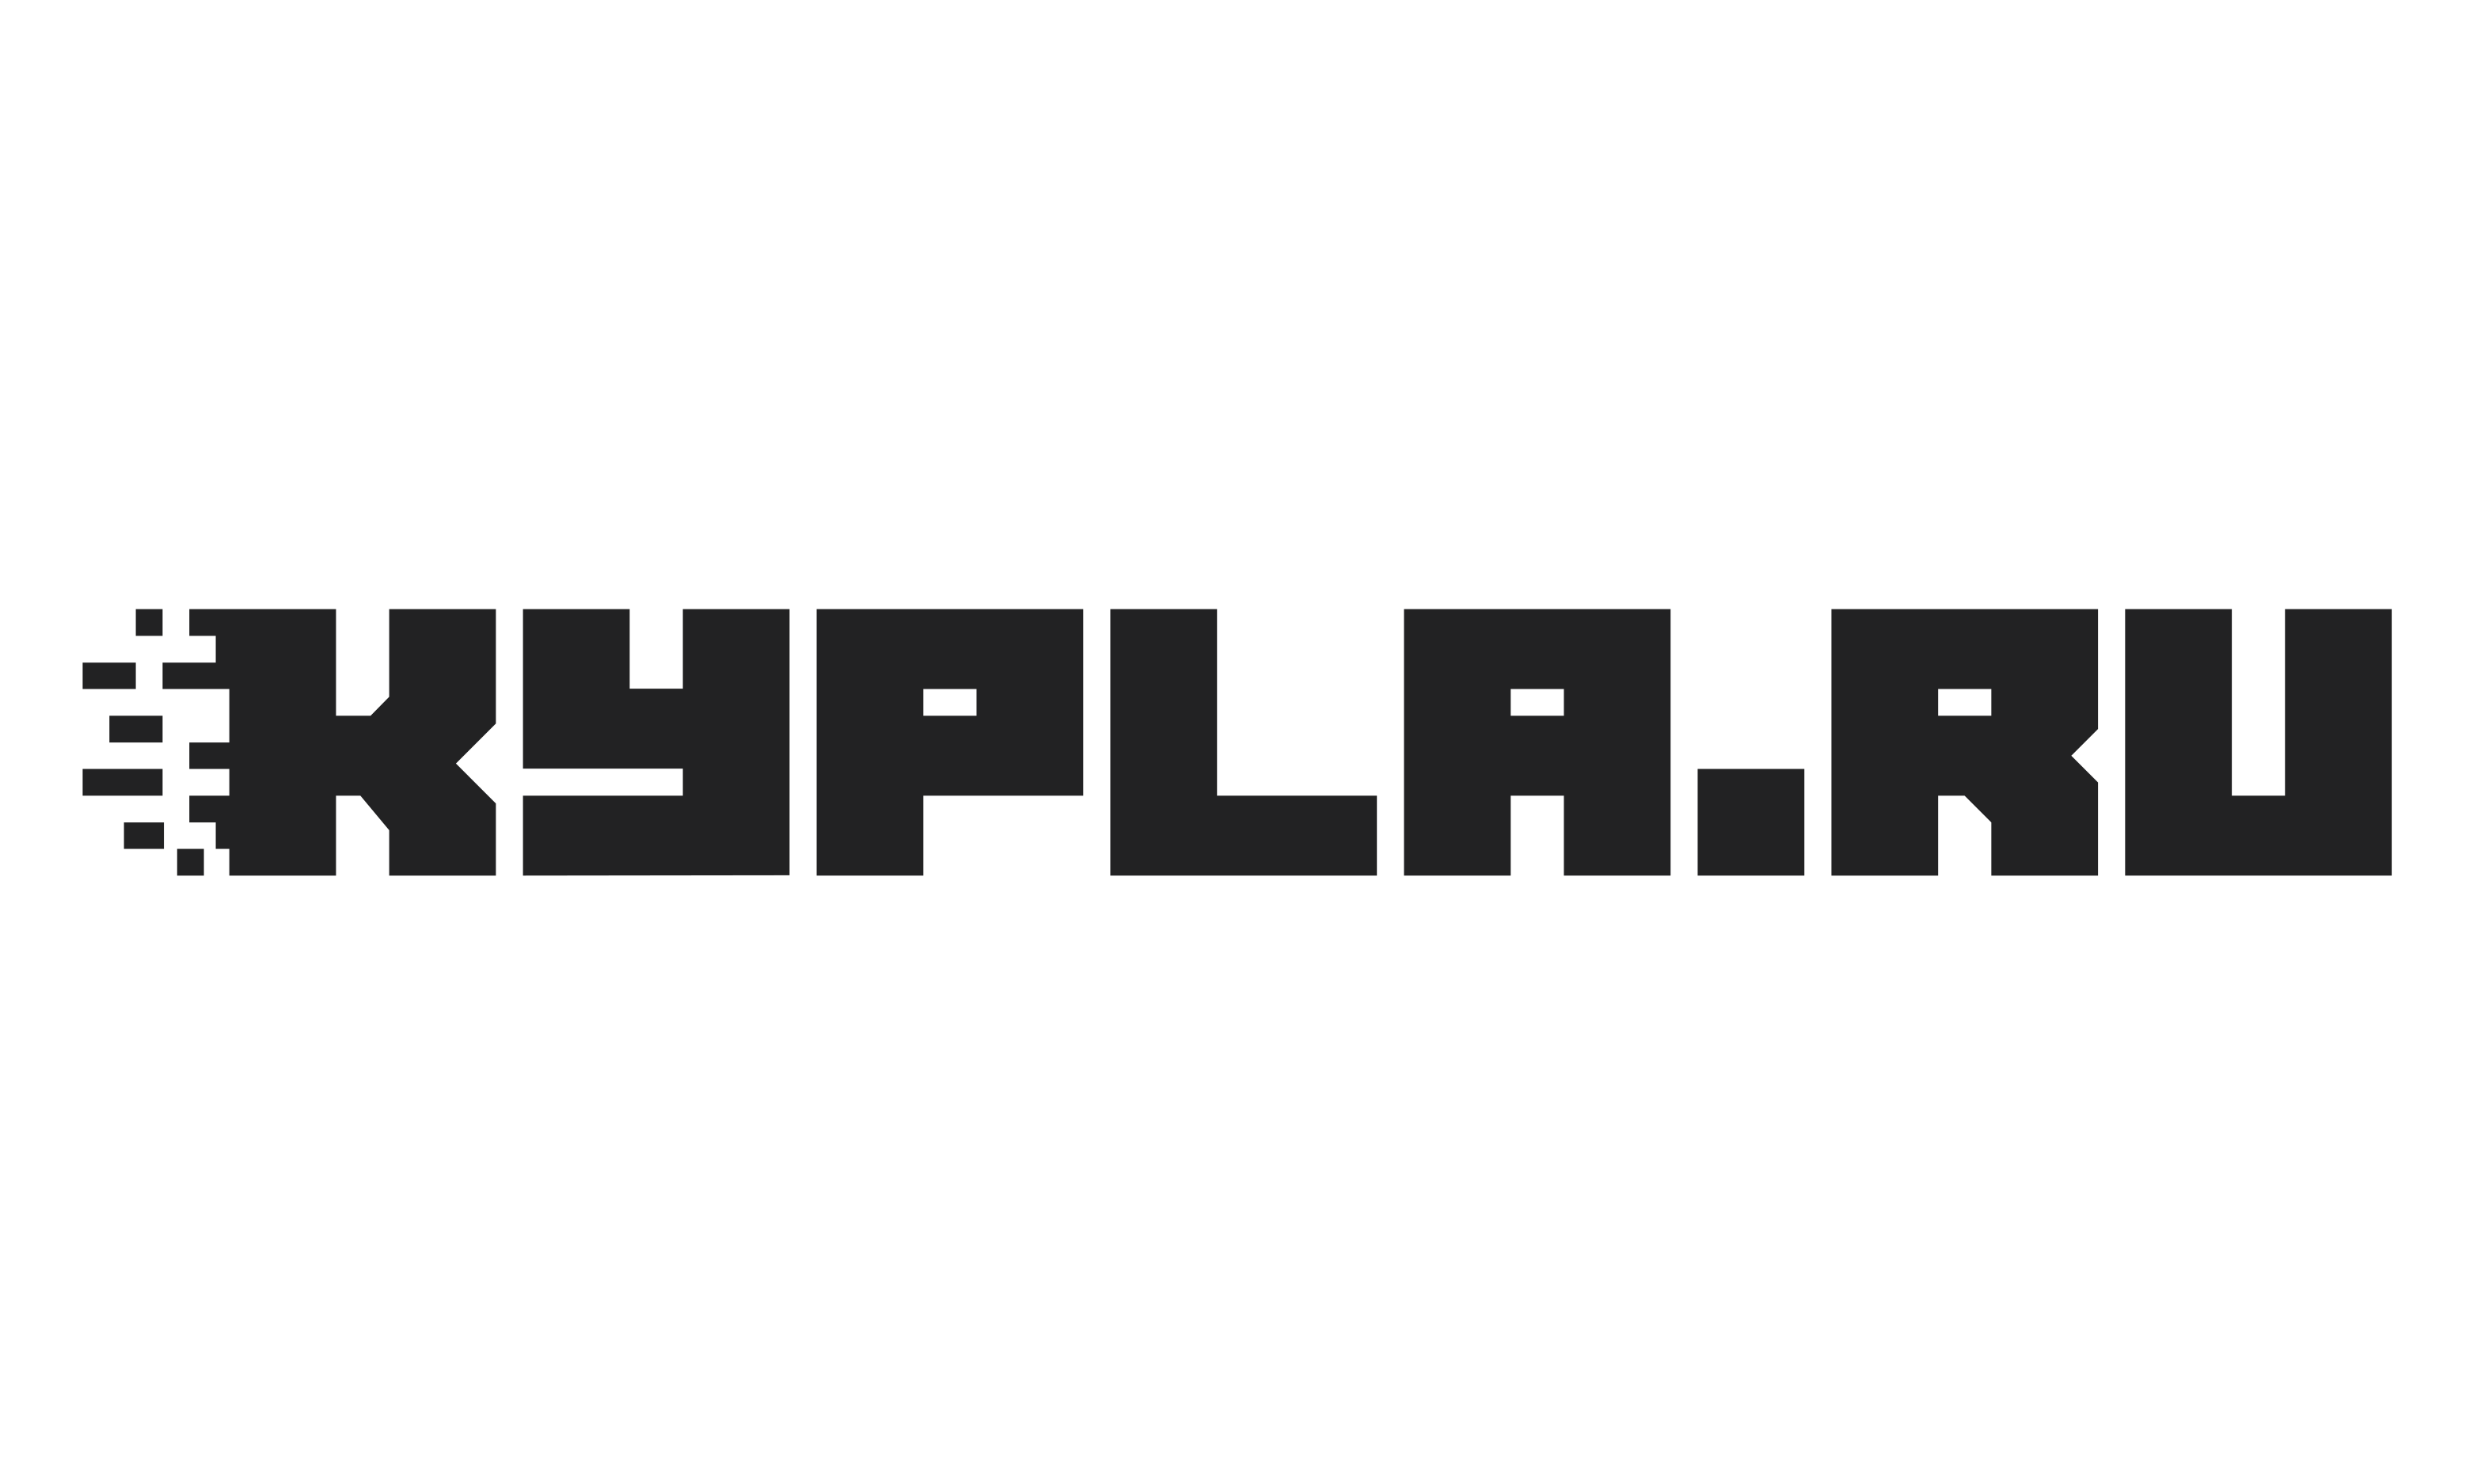 Kypla.ru продаём технику честно, просто и открыто!